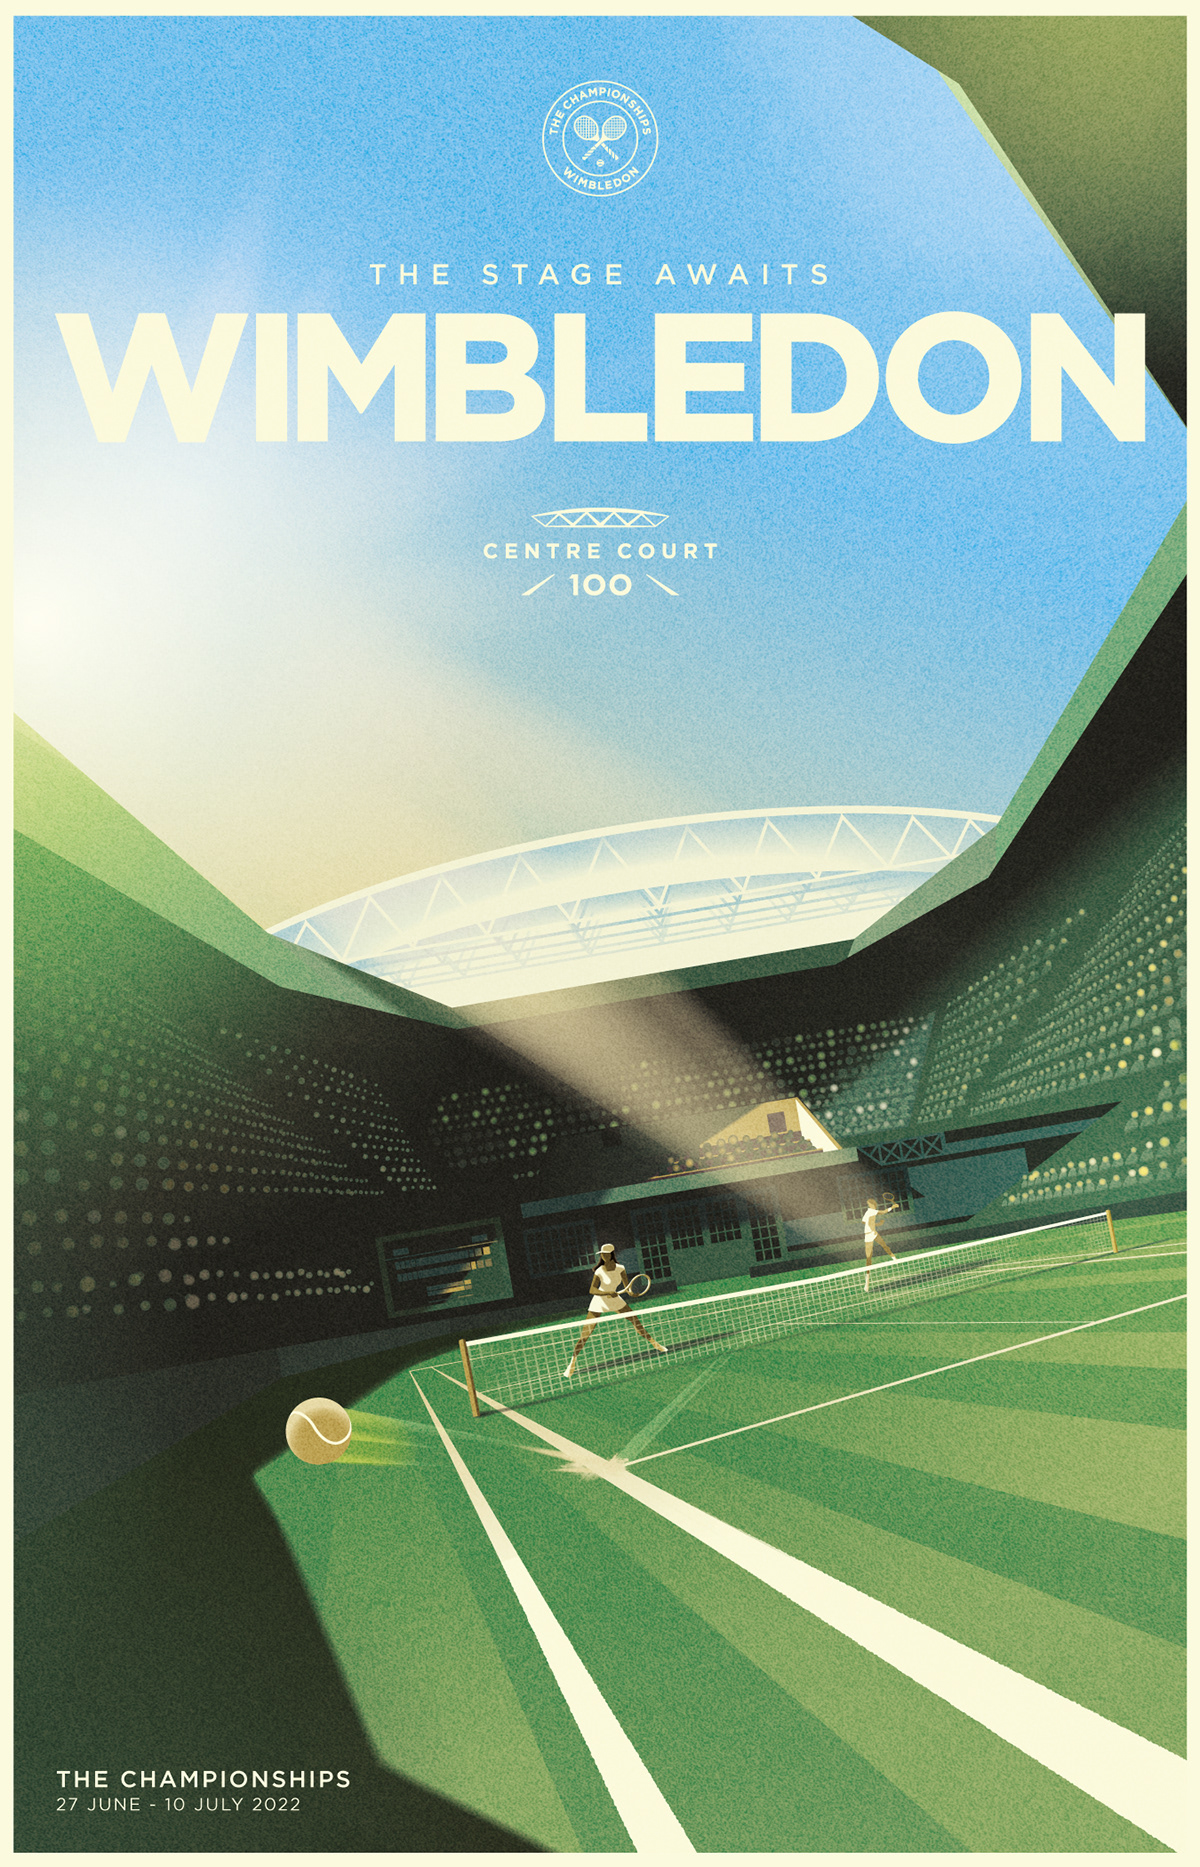 campaign design designer Digital Art  graphic design  tenis wimbledon